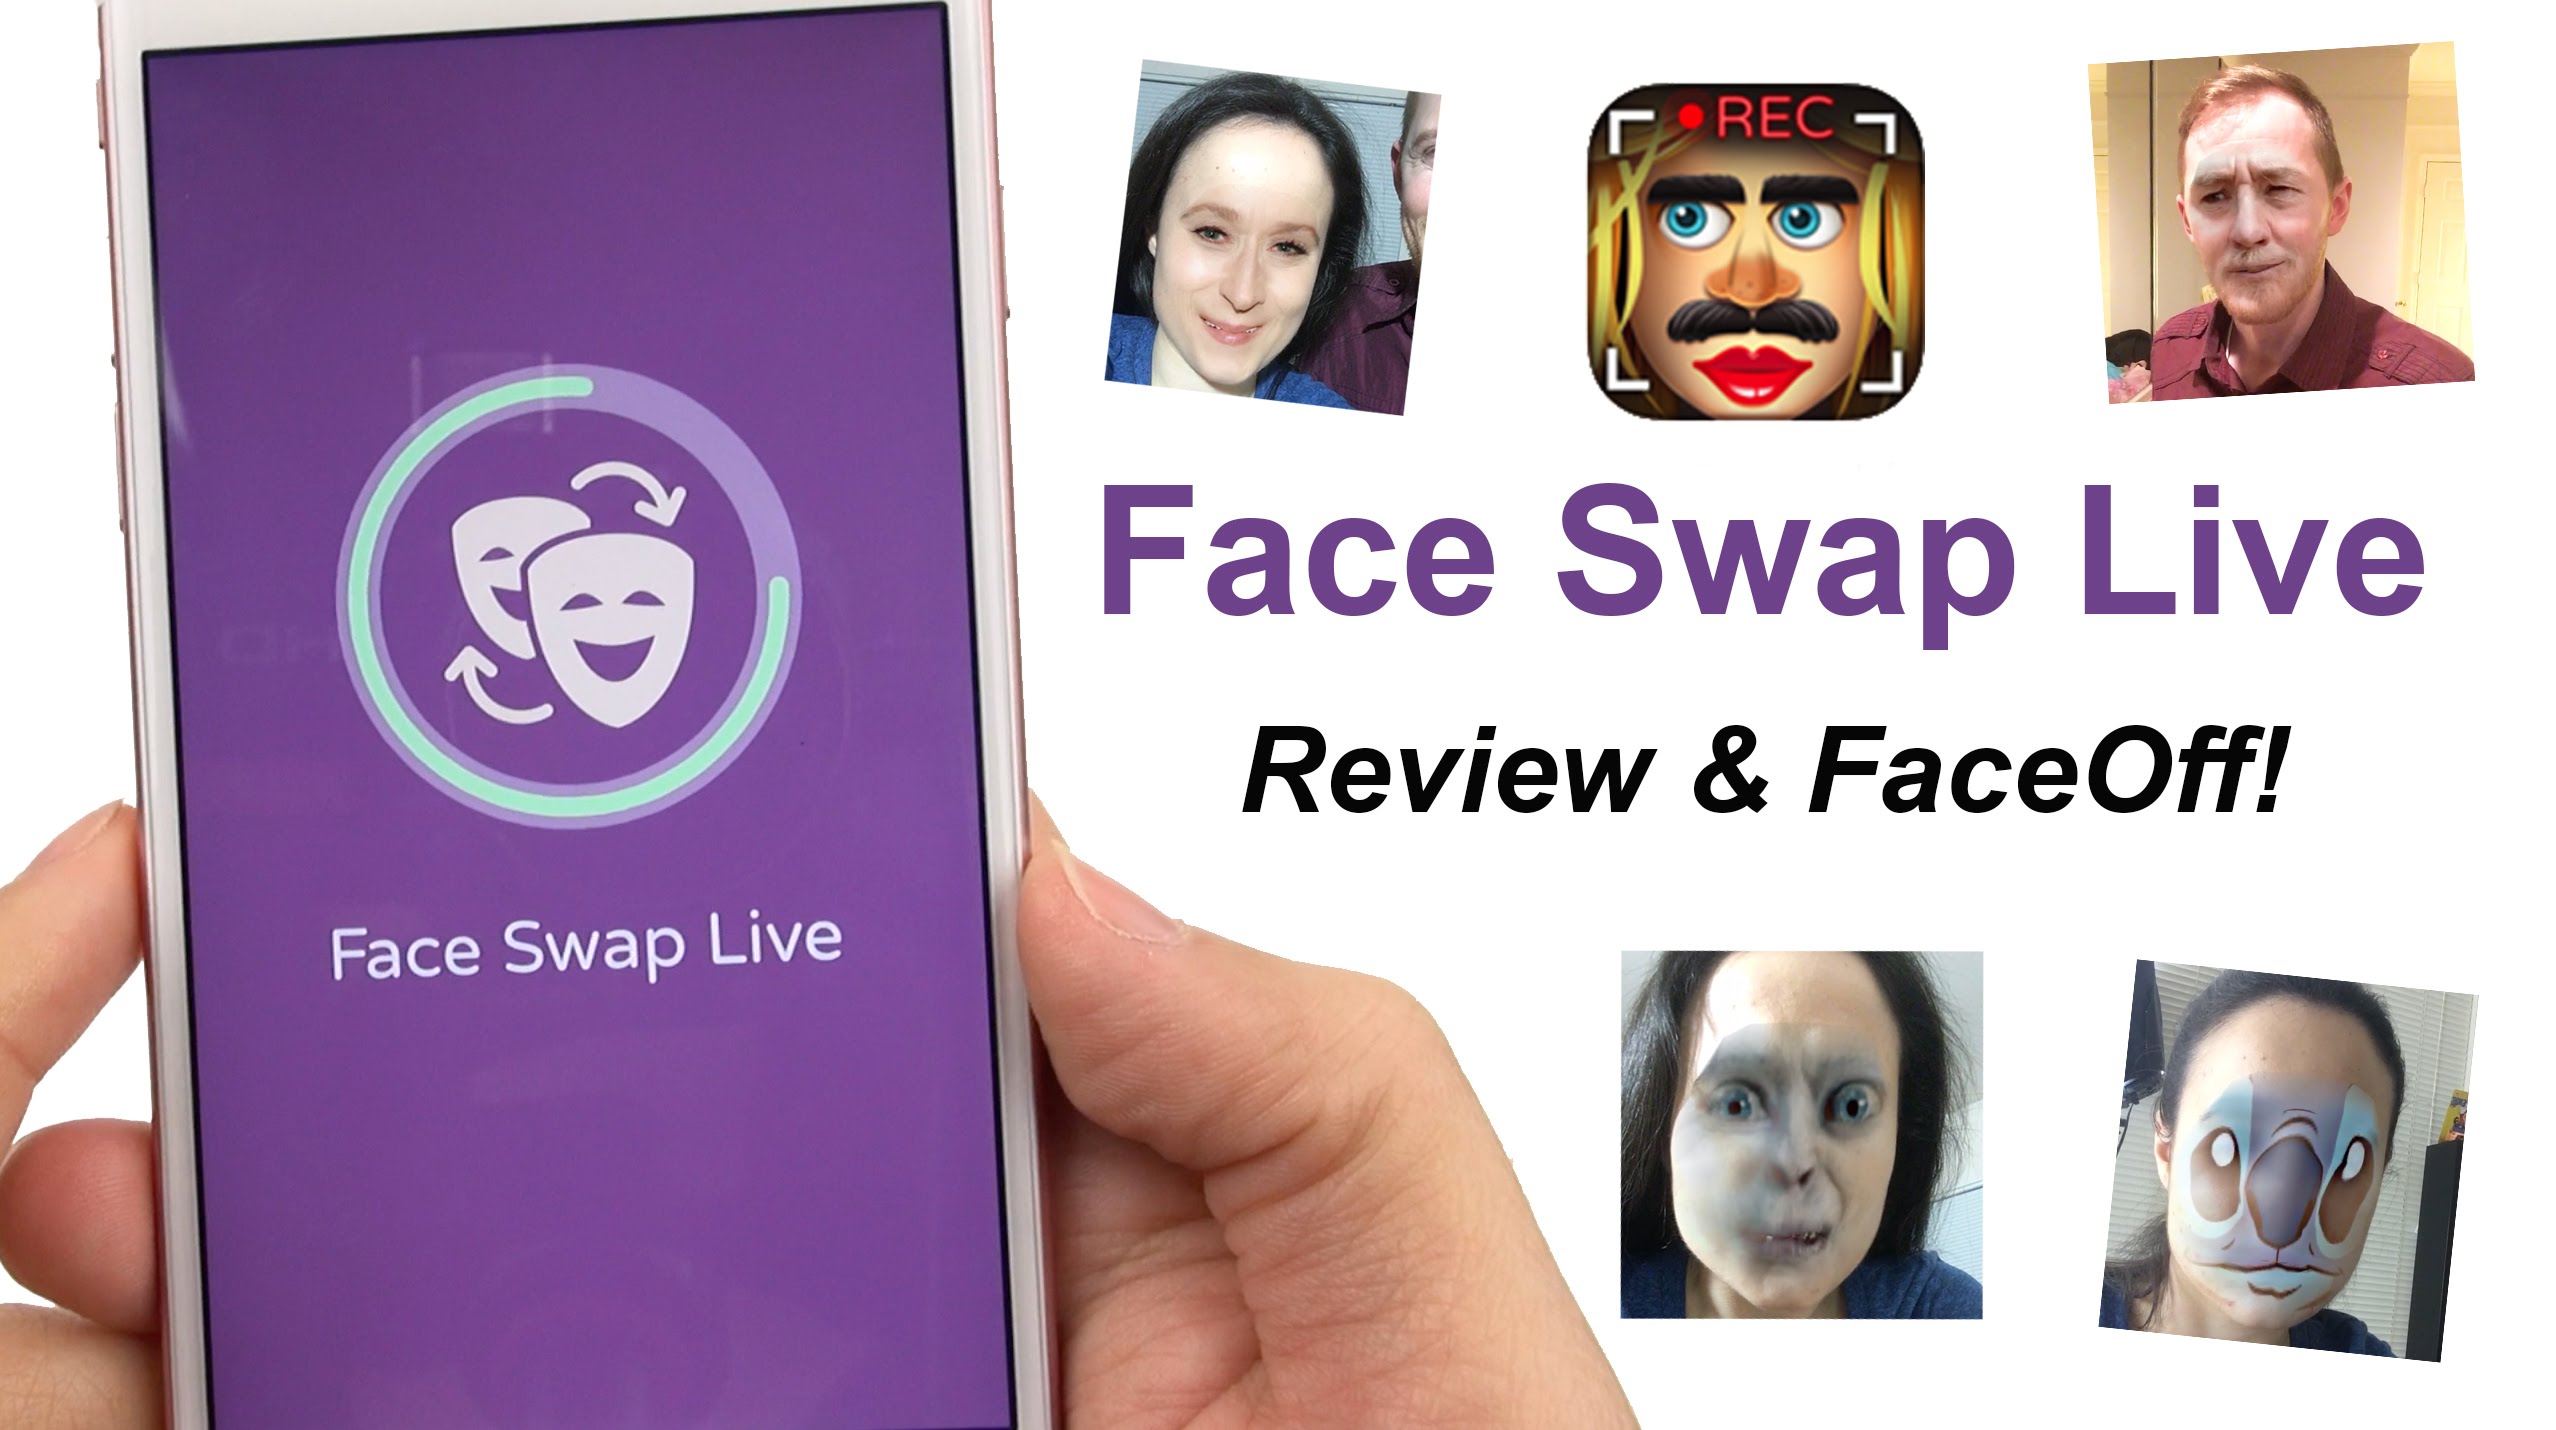 Face Swap Live App Review & FACE OFF!